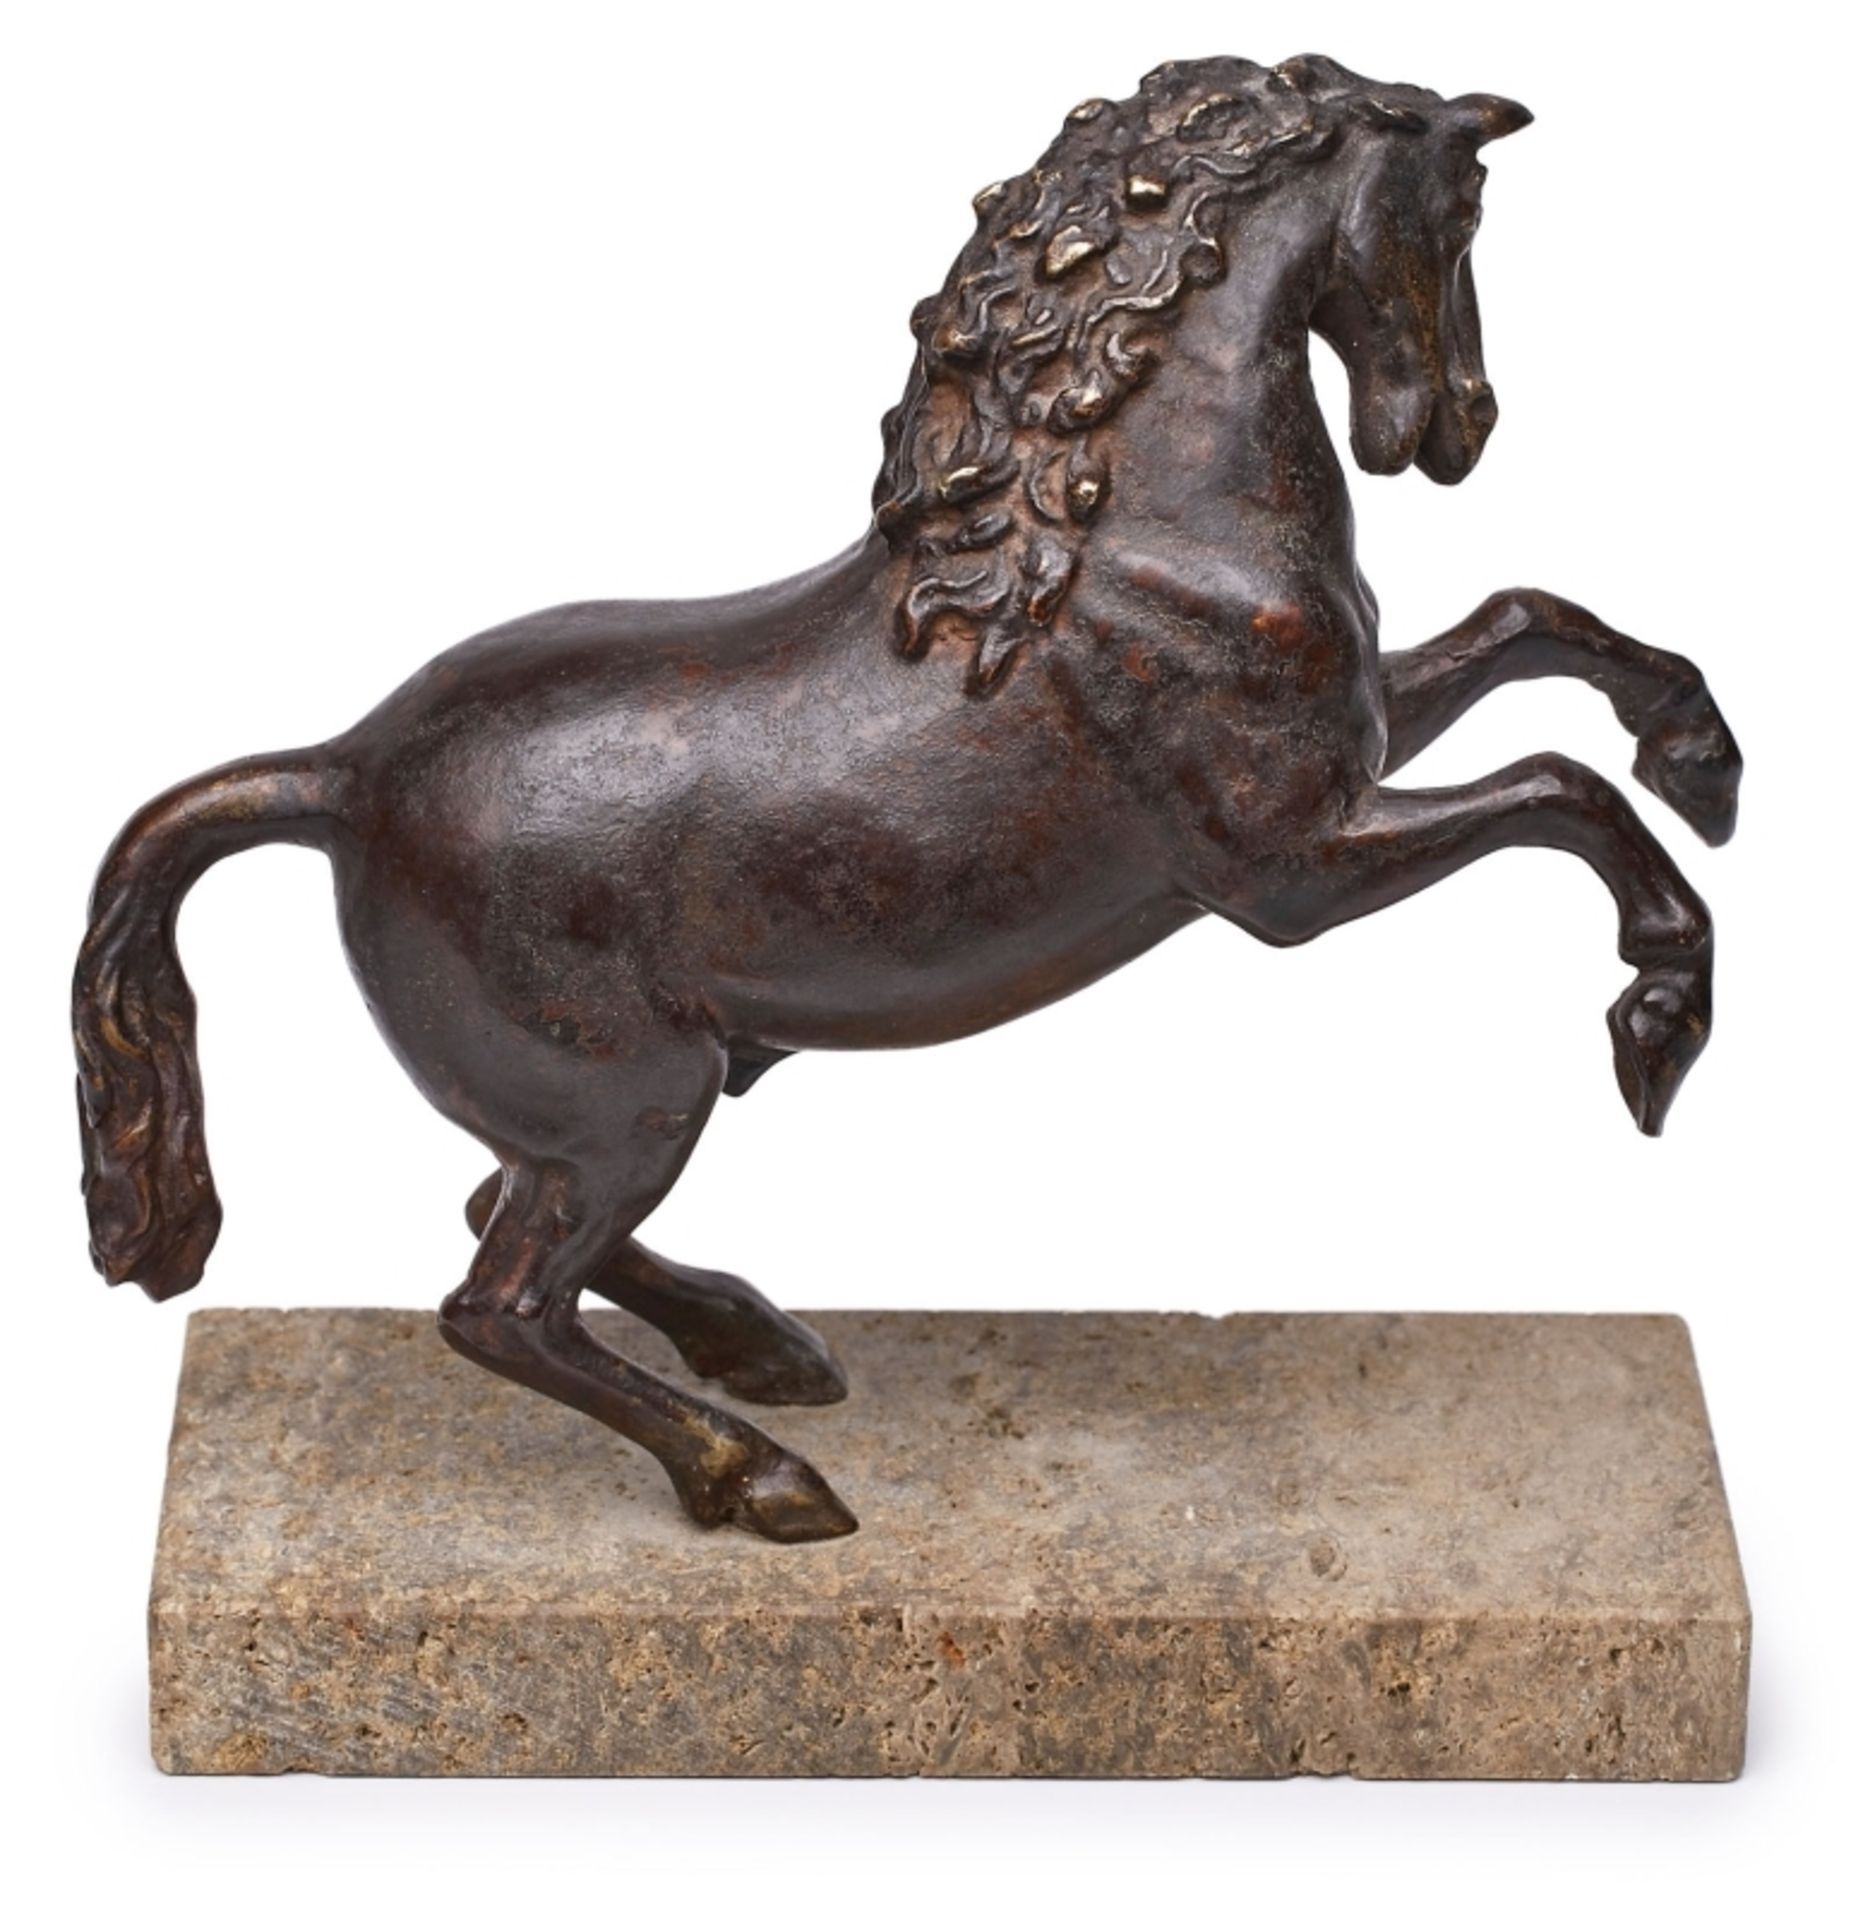 Kl. Bronze Werkstatt Fanelli zugeschr.: Steigendes Pferd, Italien wohl 16./ 17. Jh. - Bild 2 aus 2